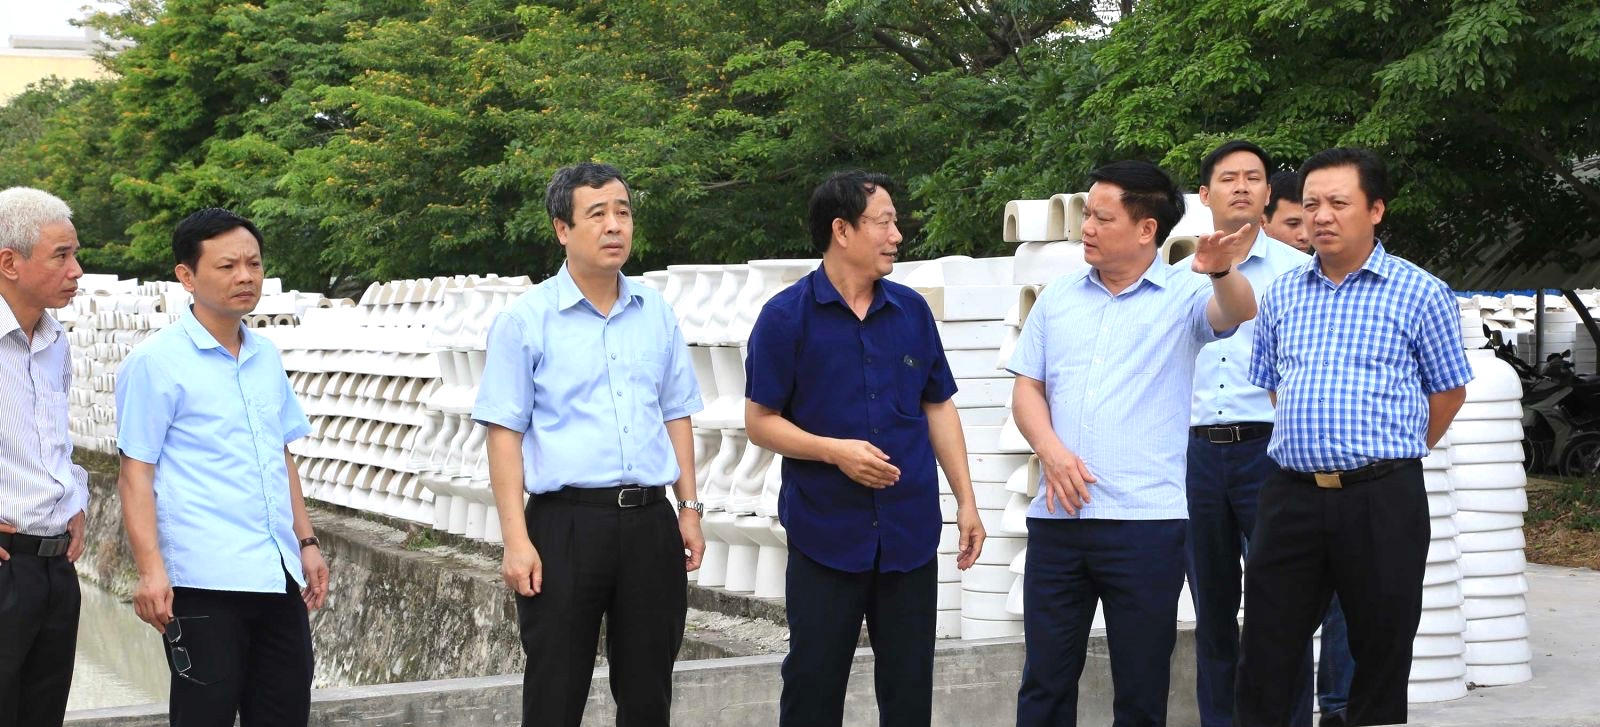 <p/>Lãnh đạo tỉnh, lãnh đạo huyện Tiền Hải kiểm tra tình hình đầu tư hạ tầng KCN Tiền Hải